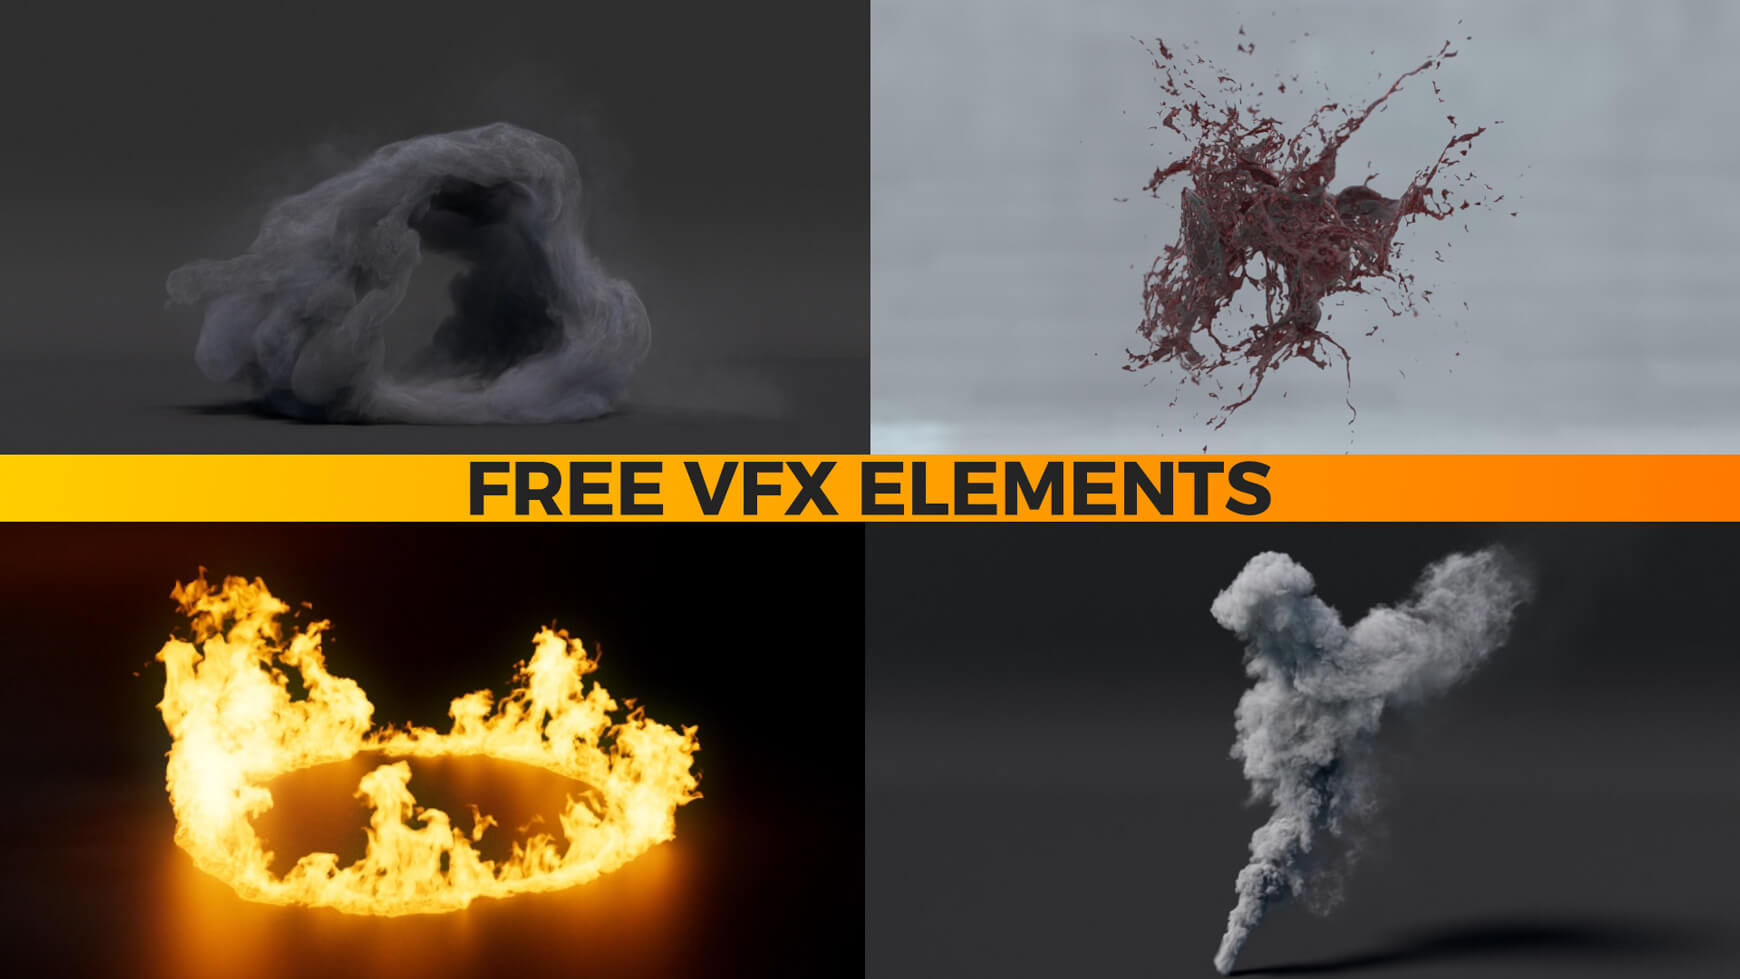 VFX Elements Contest The Pixel Lab